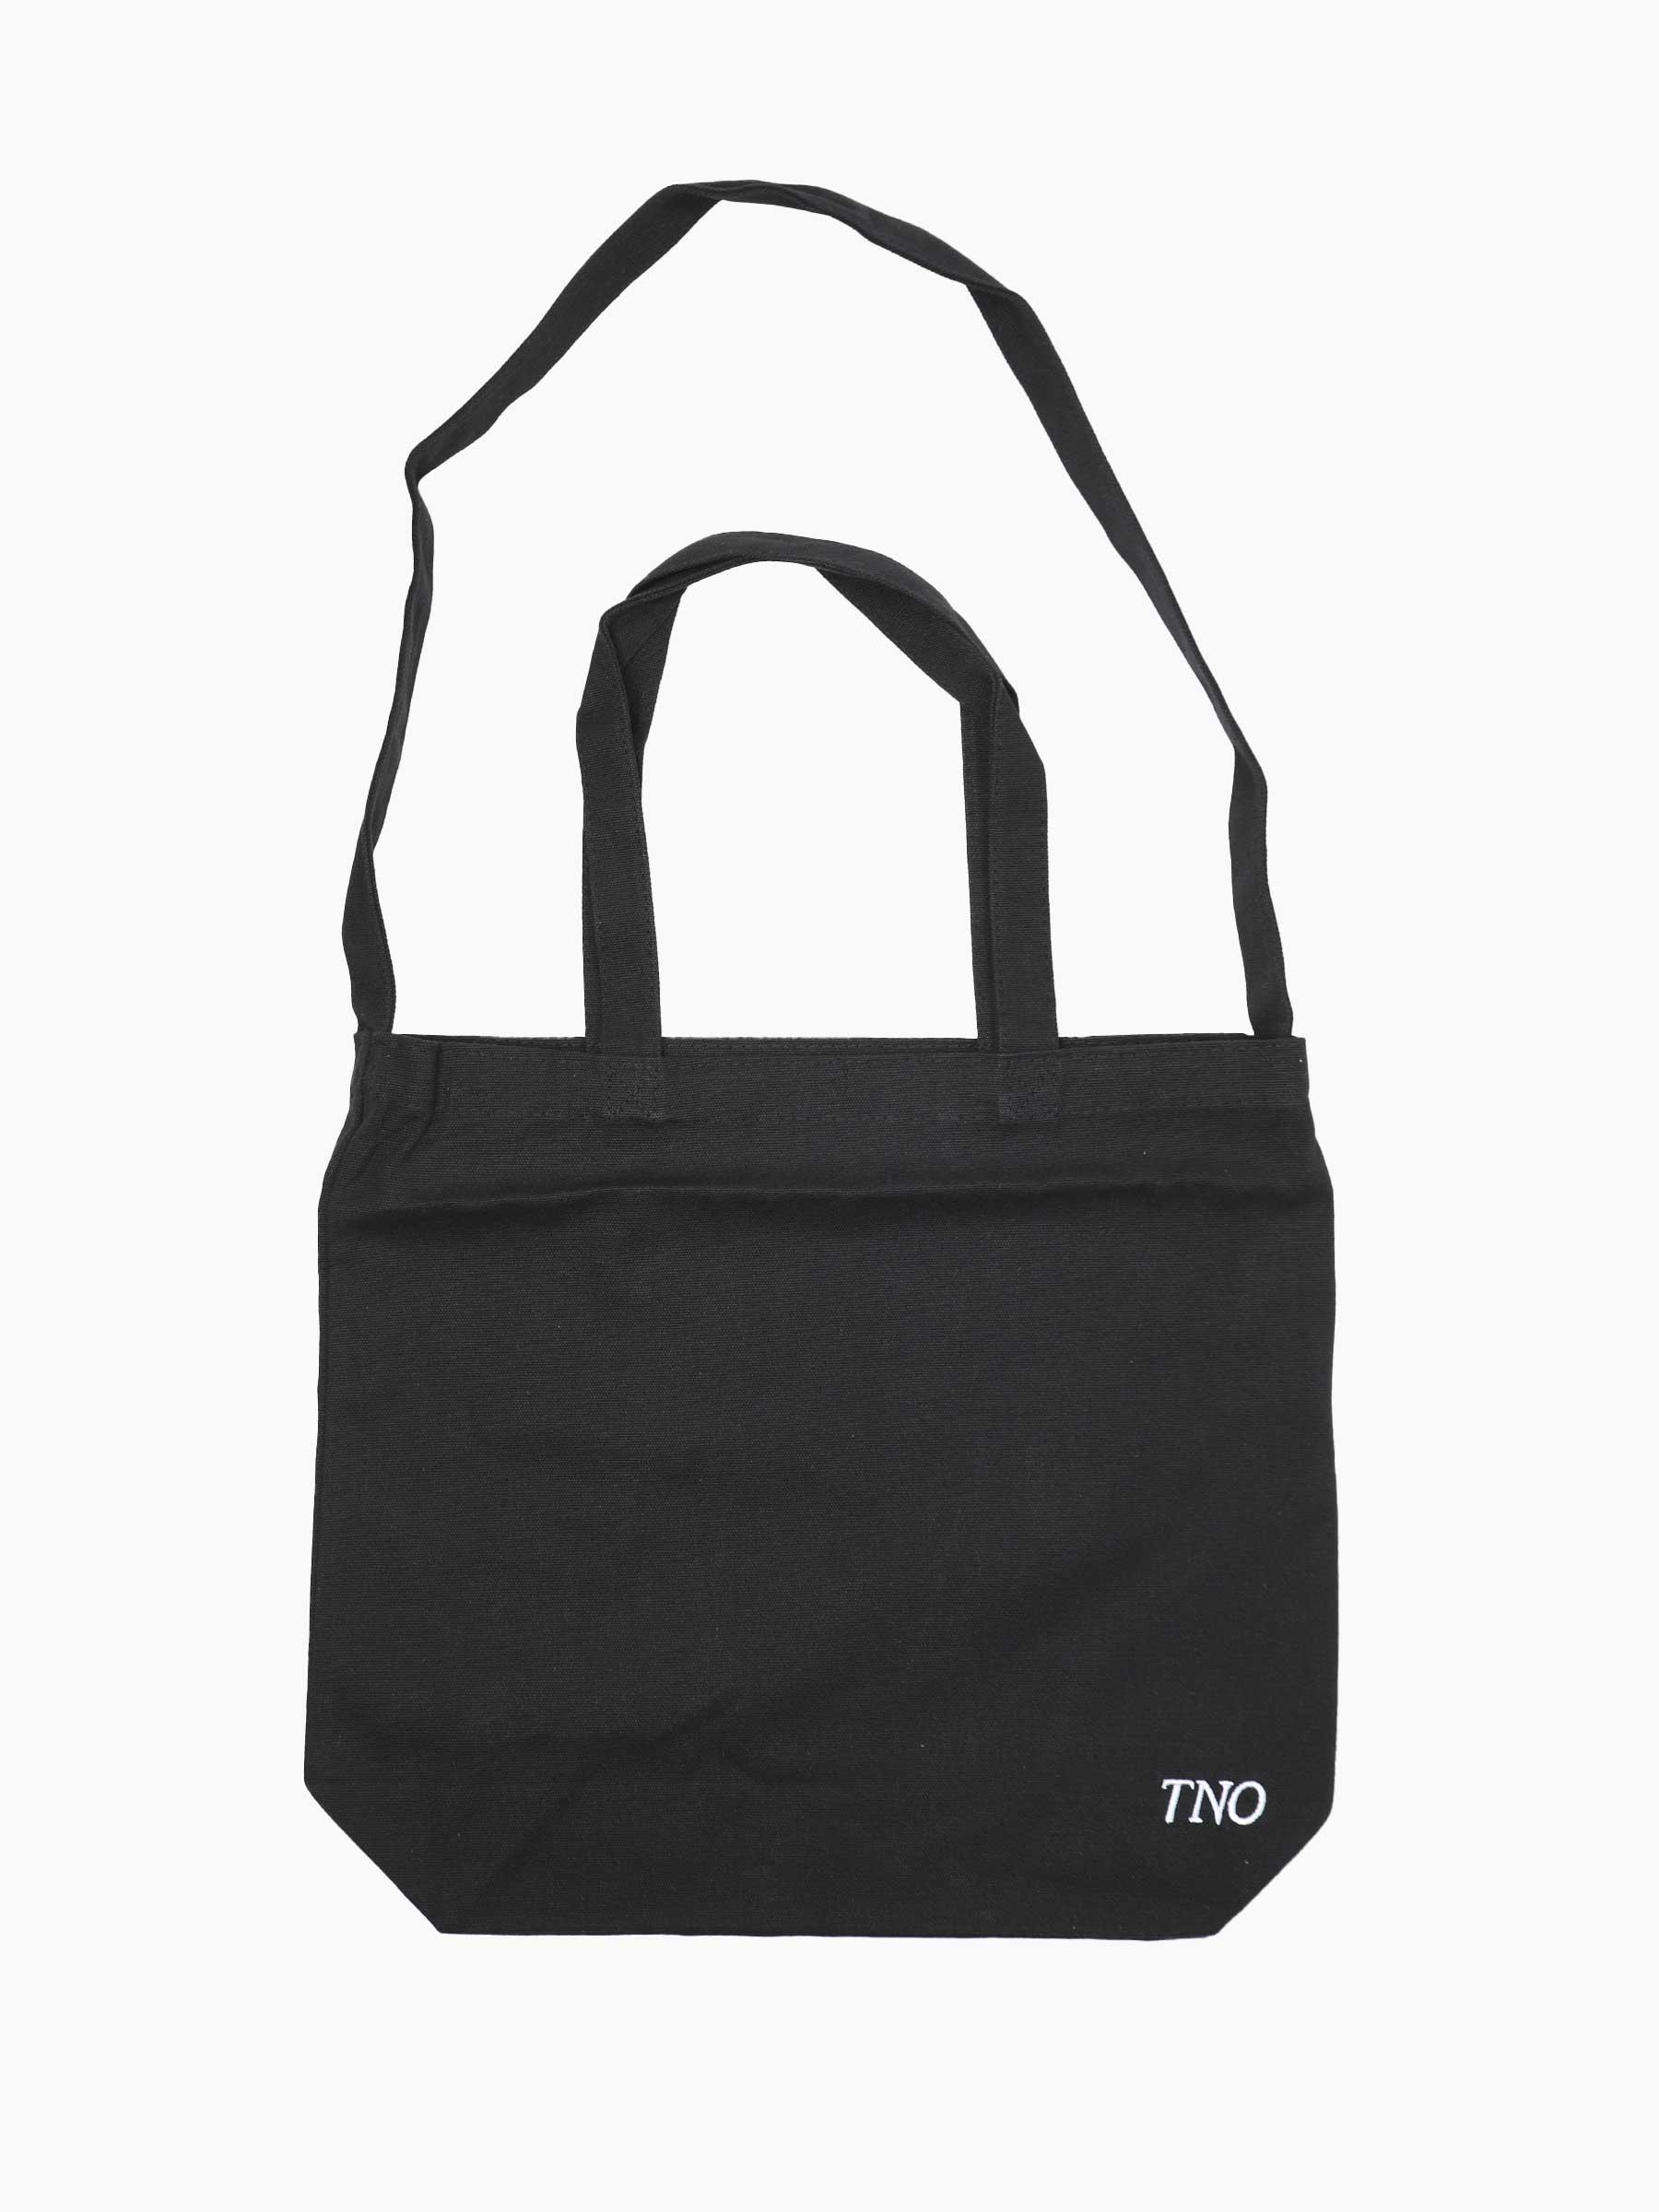 CATNA Tote Bag Black 900CATF23.999